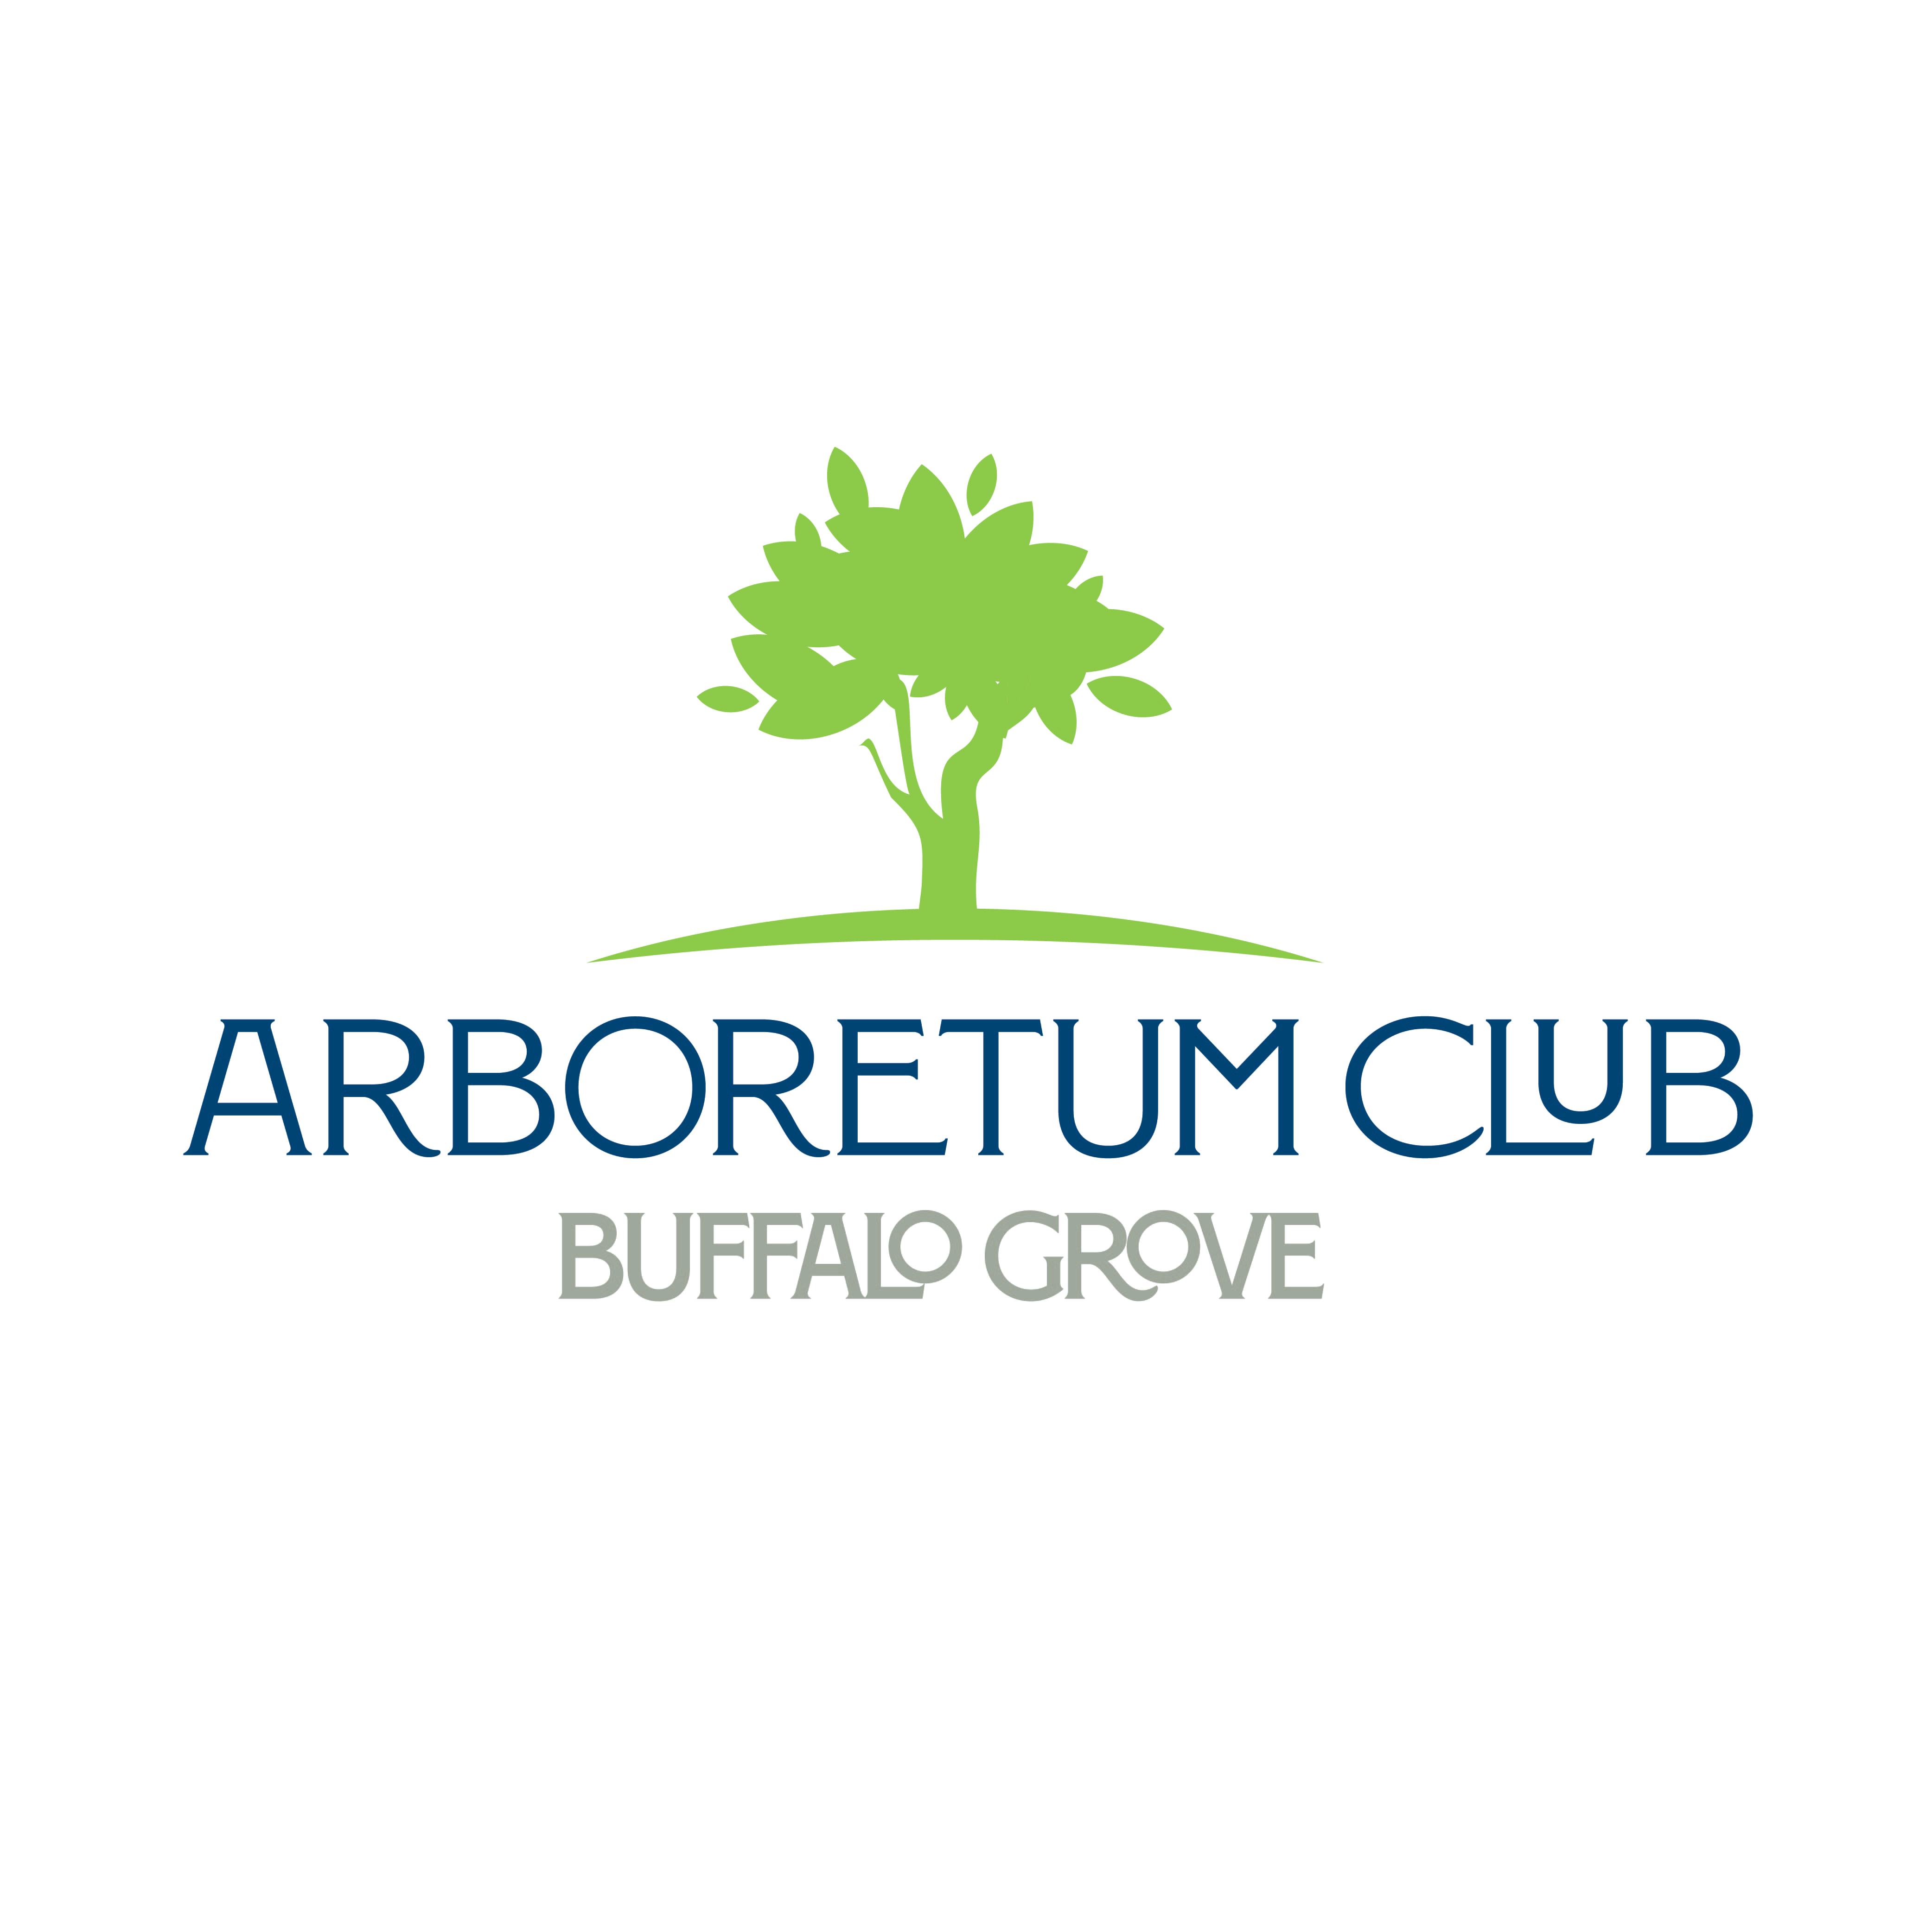 The Arboretum Club